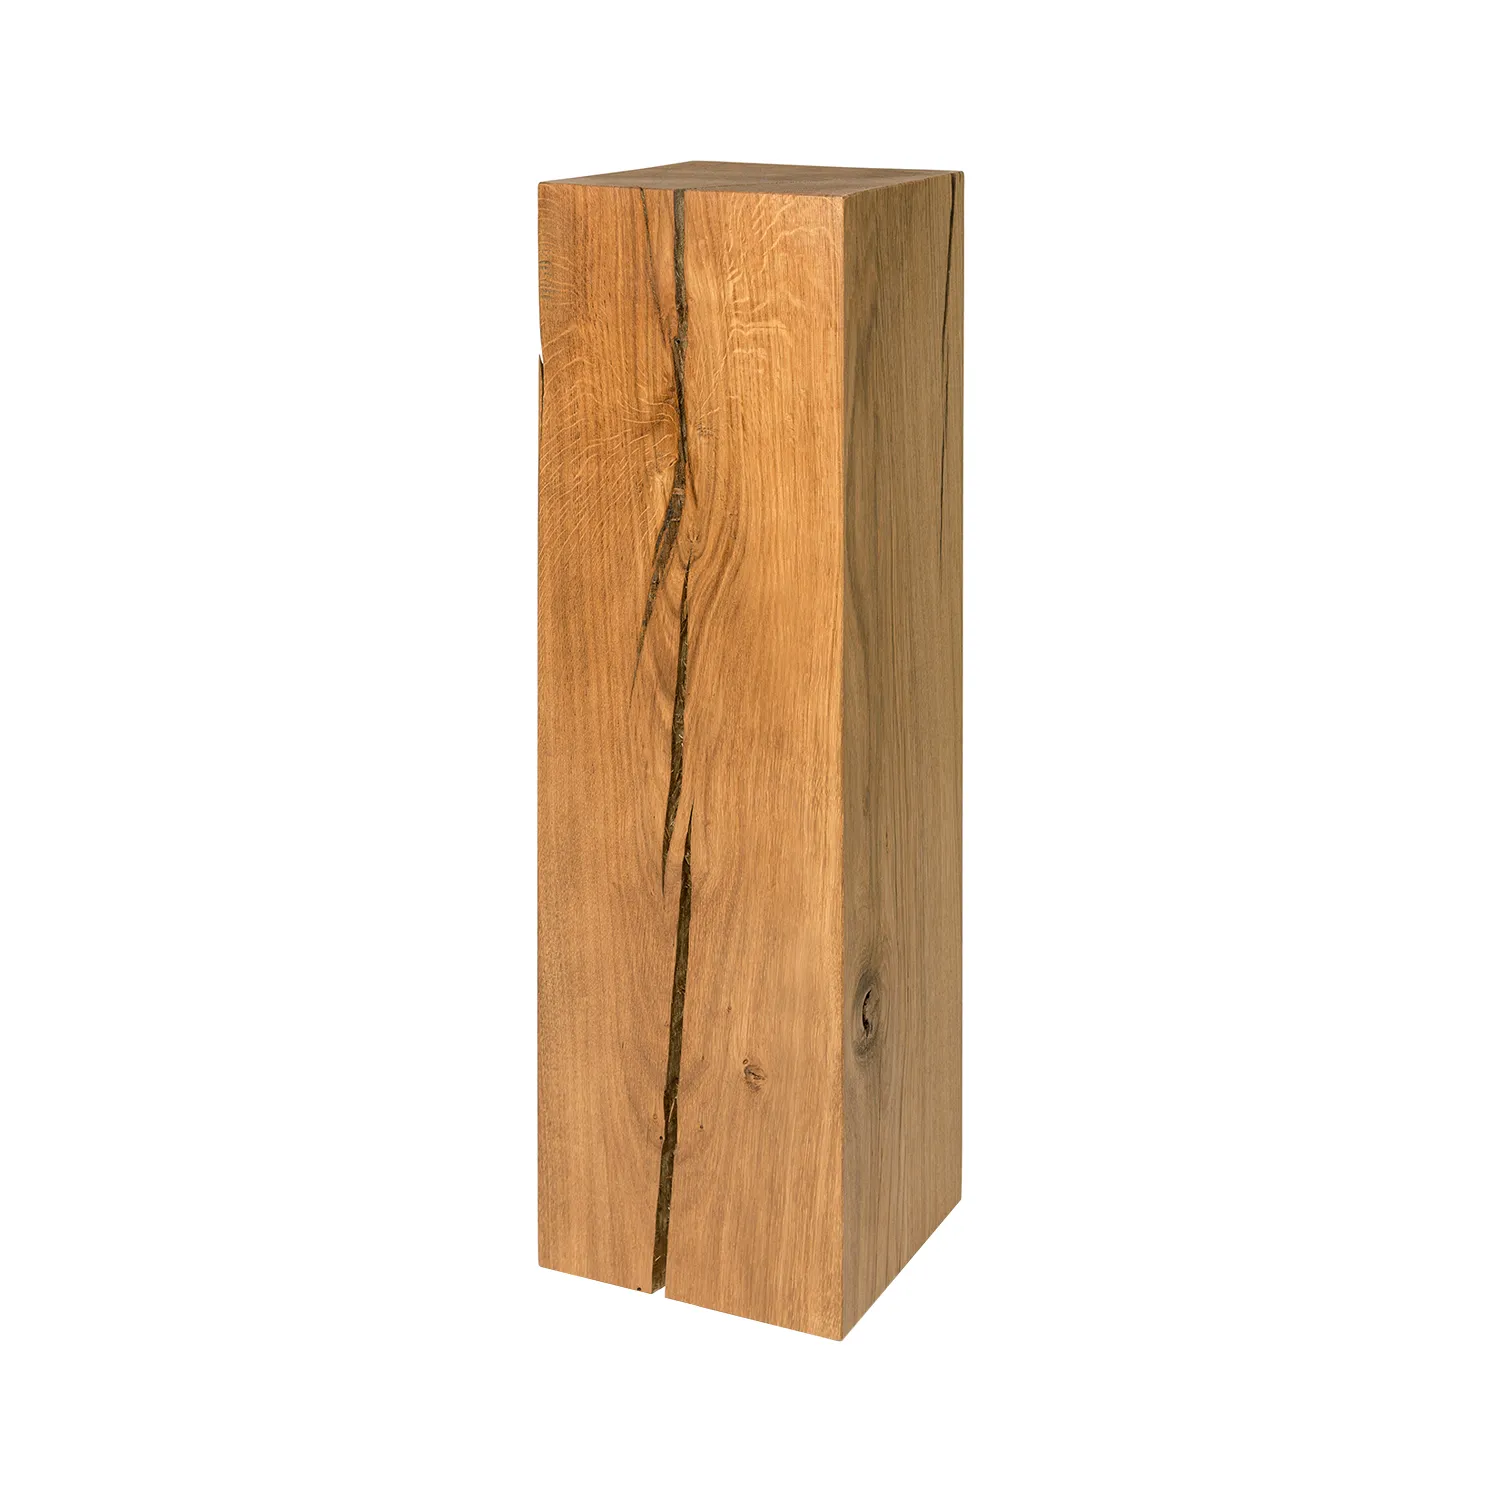 Hoher 12x12 cm Holzblock mit dekorativen Rissen